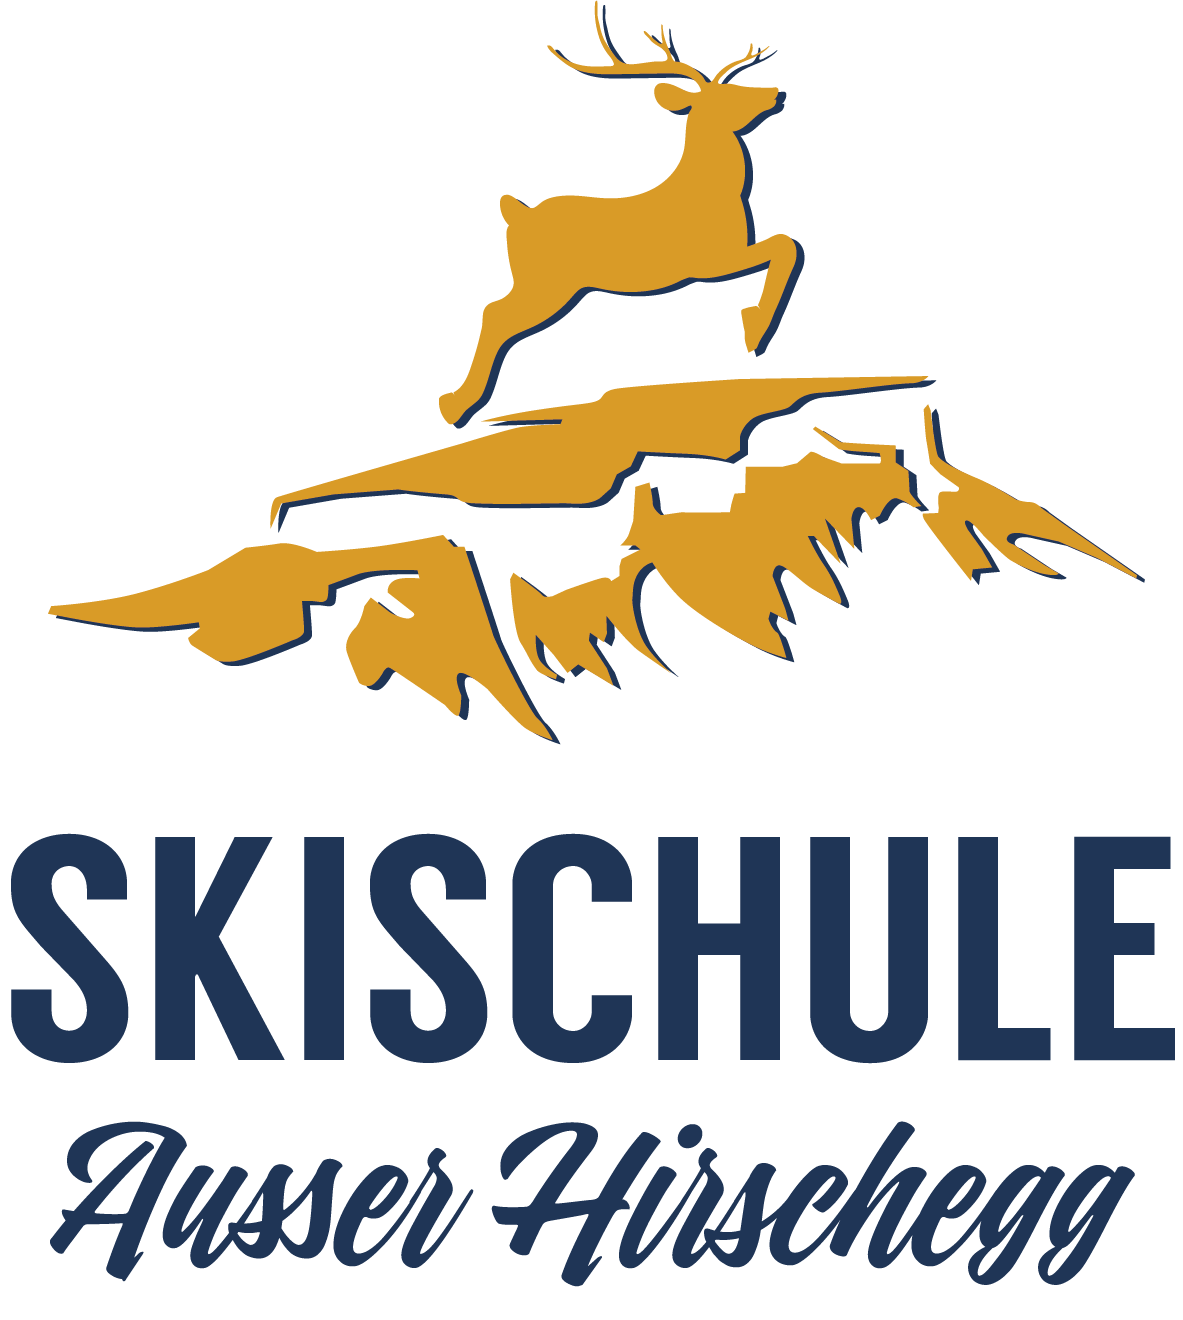 Skischool Ausser Hirschegg